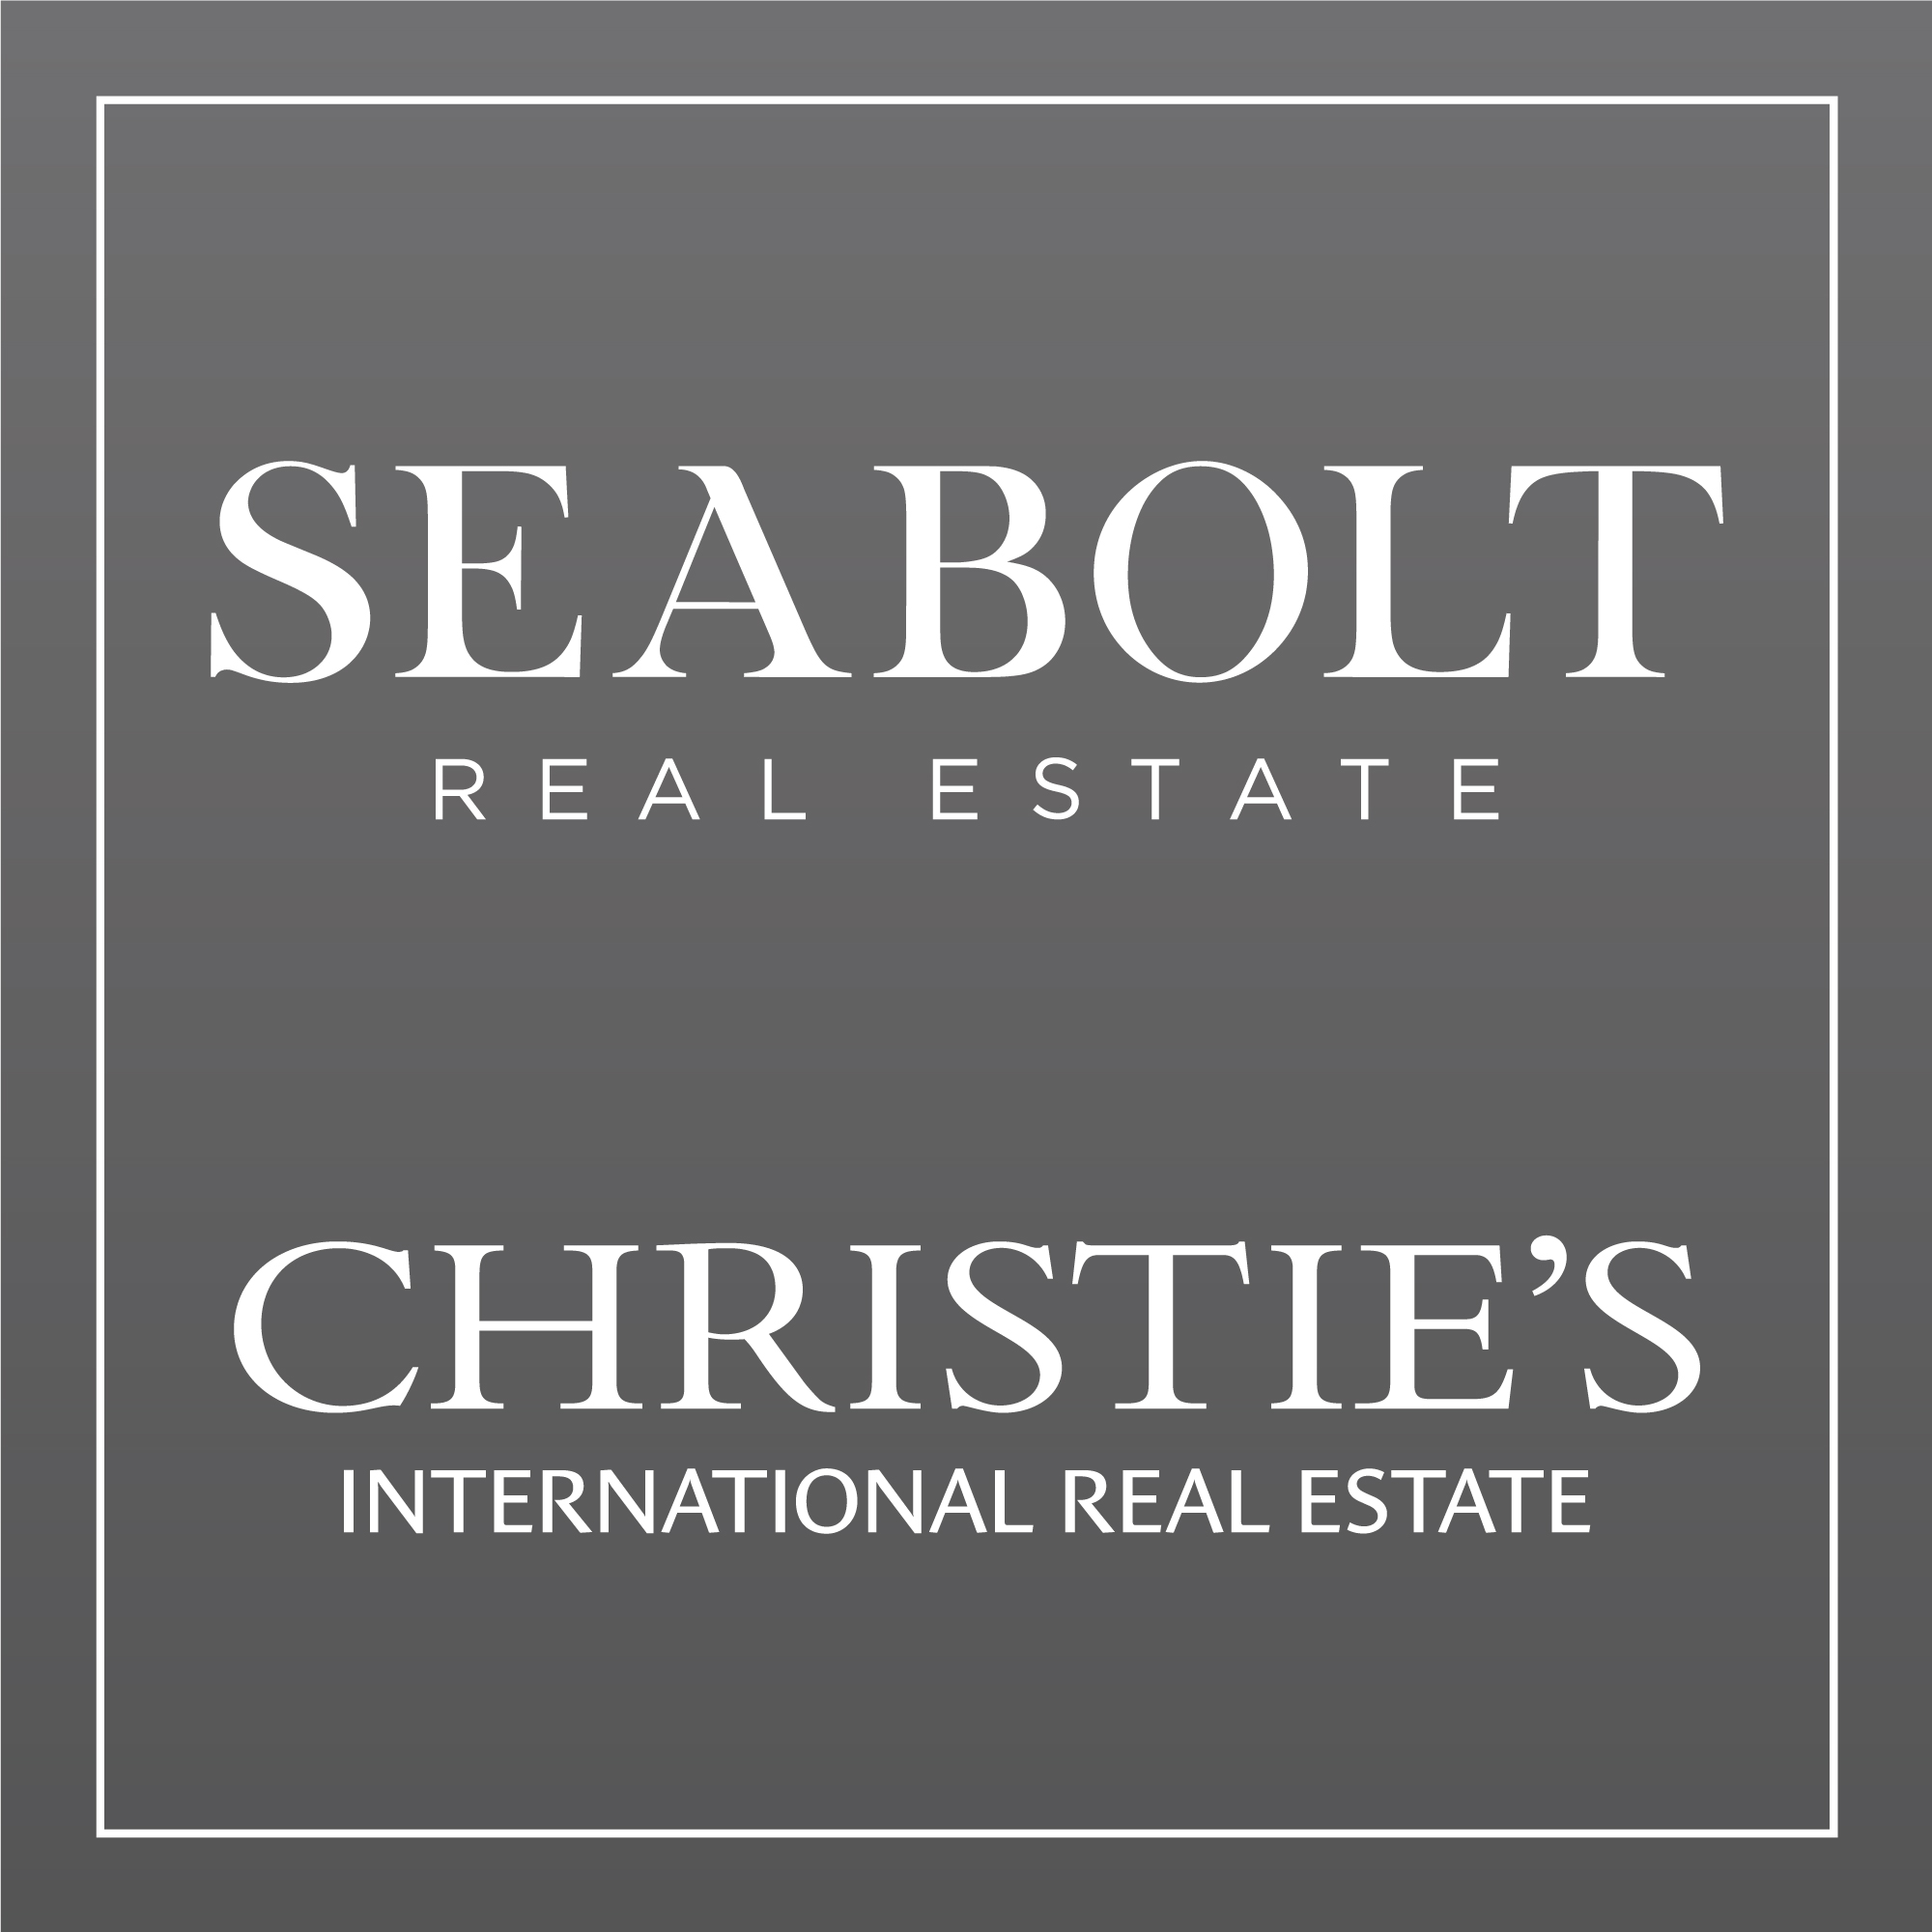 Seabolt Real Estate